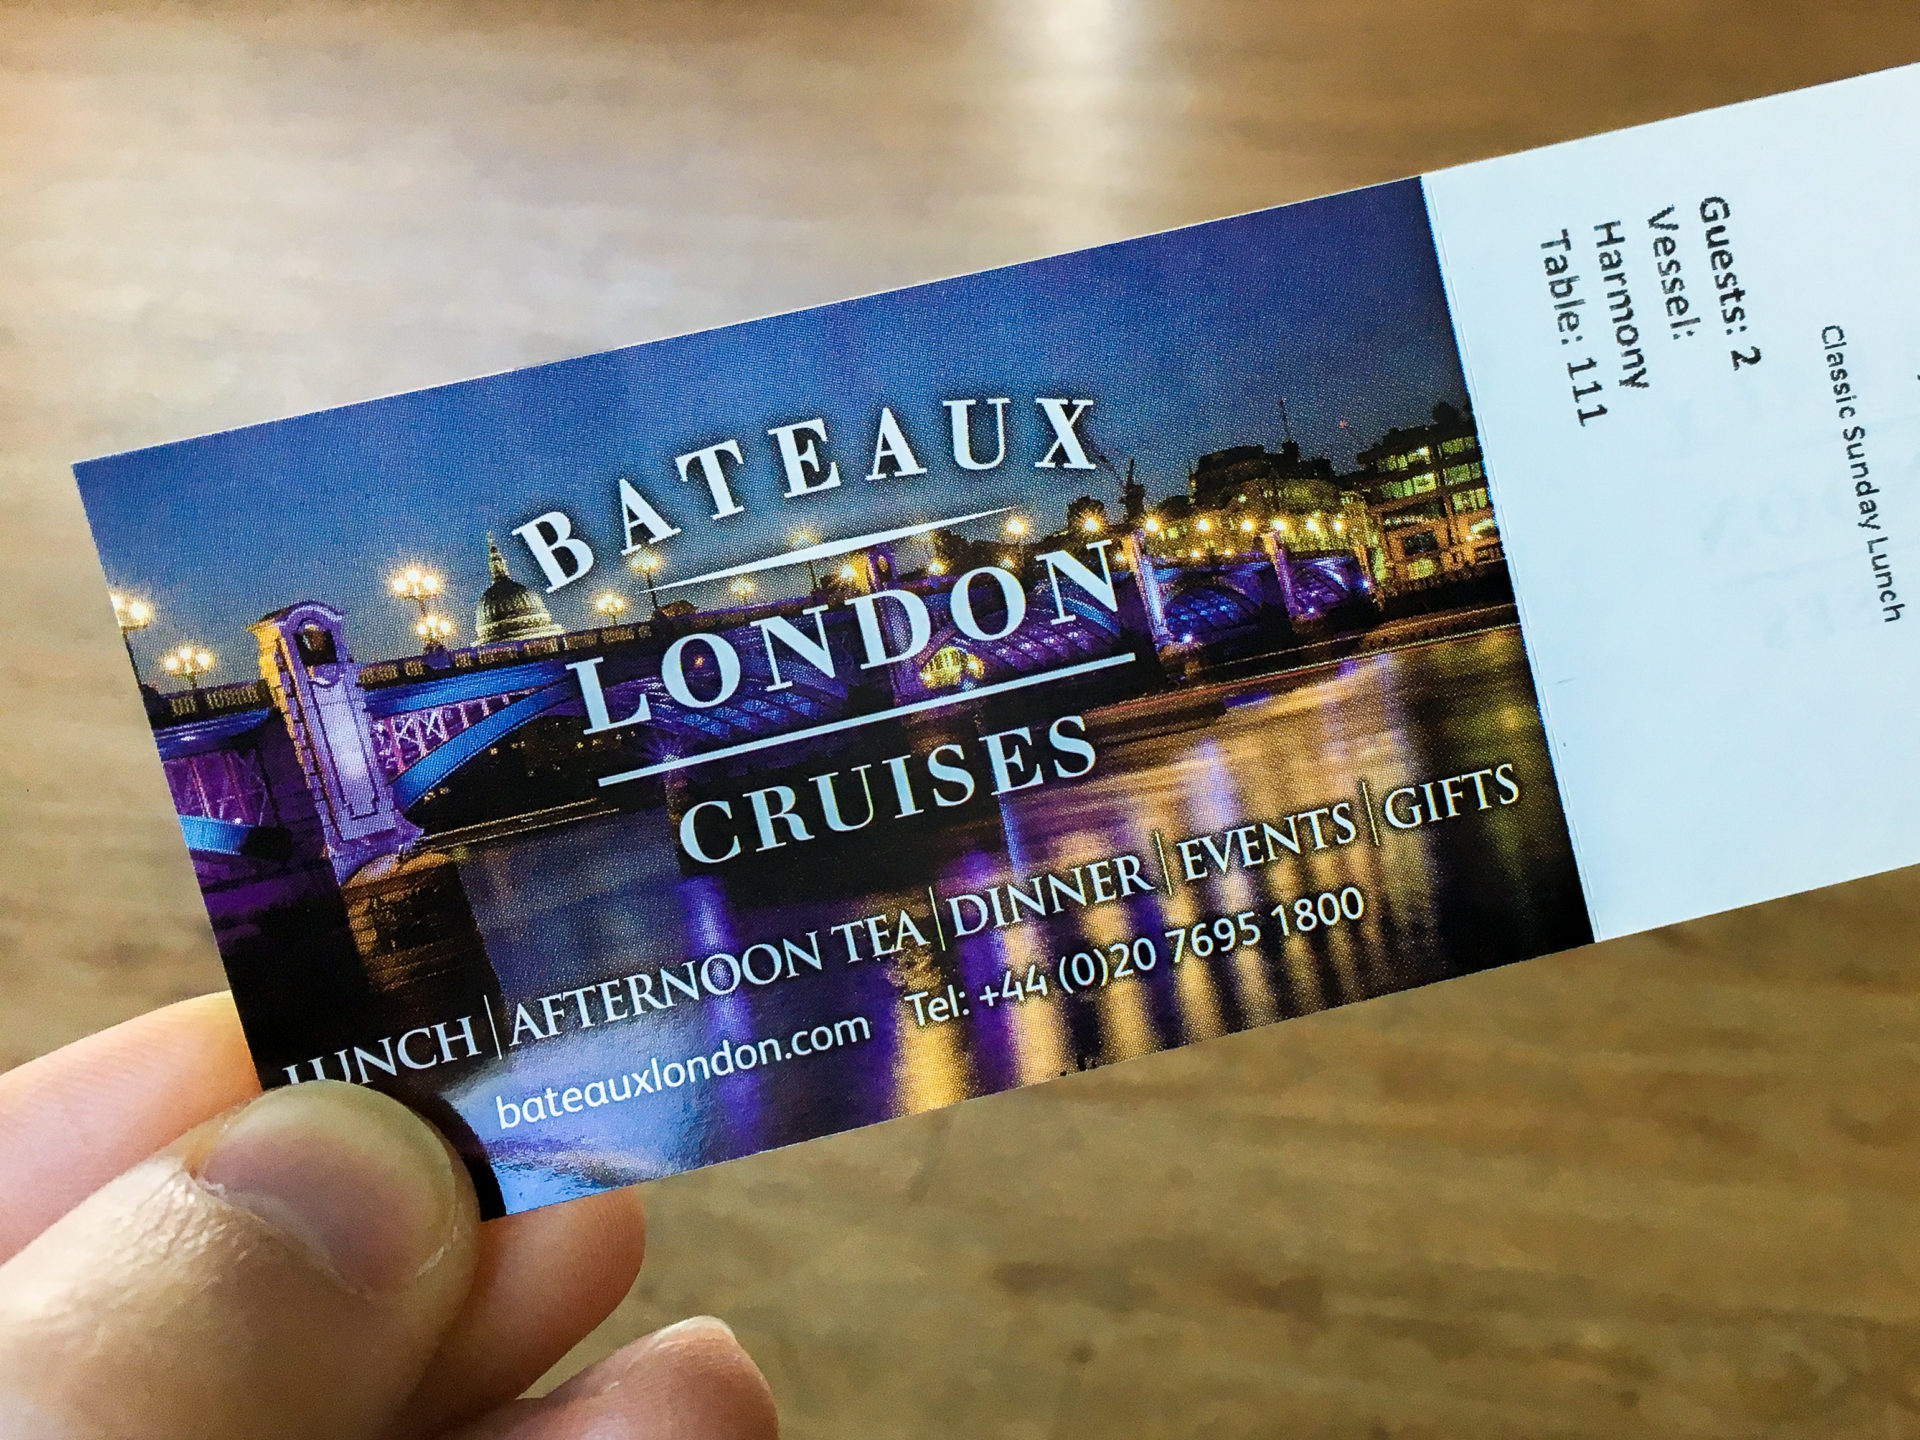 Bateaux London Cruises at Embankment Pier